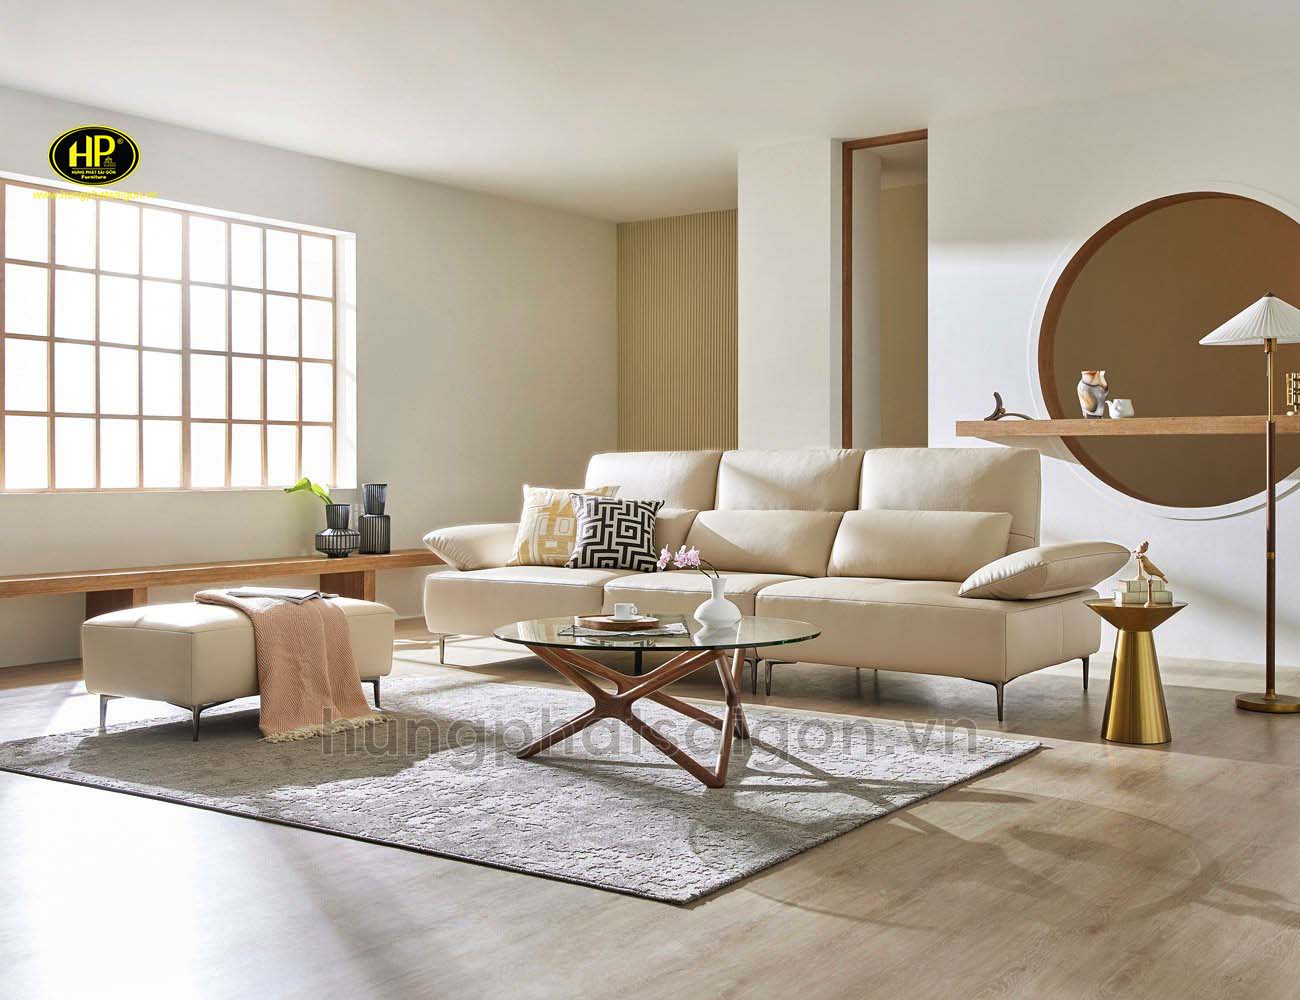 Sofa Vải Hàn Quốc Chất Lượng H-298